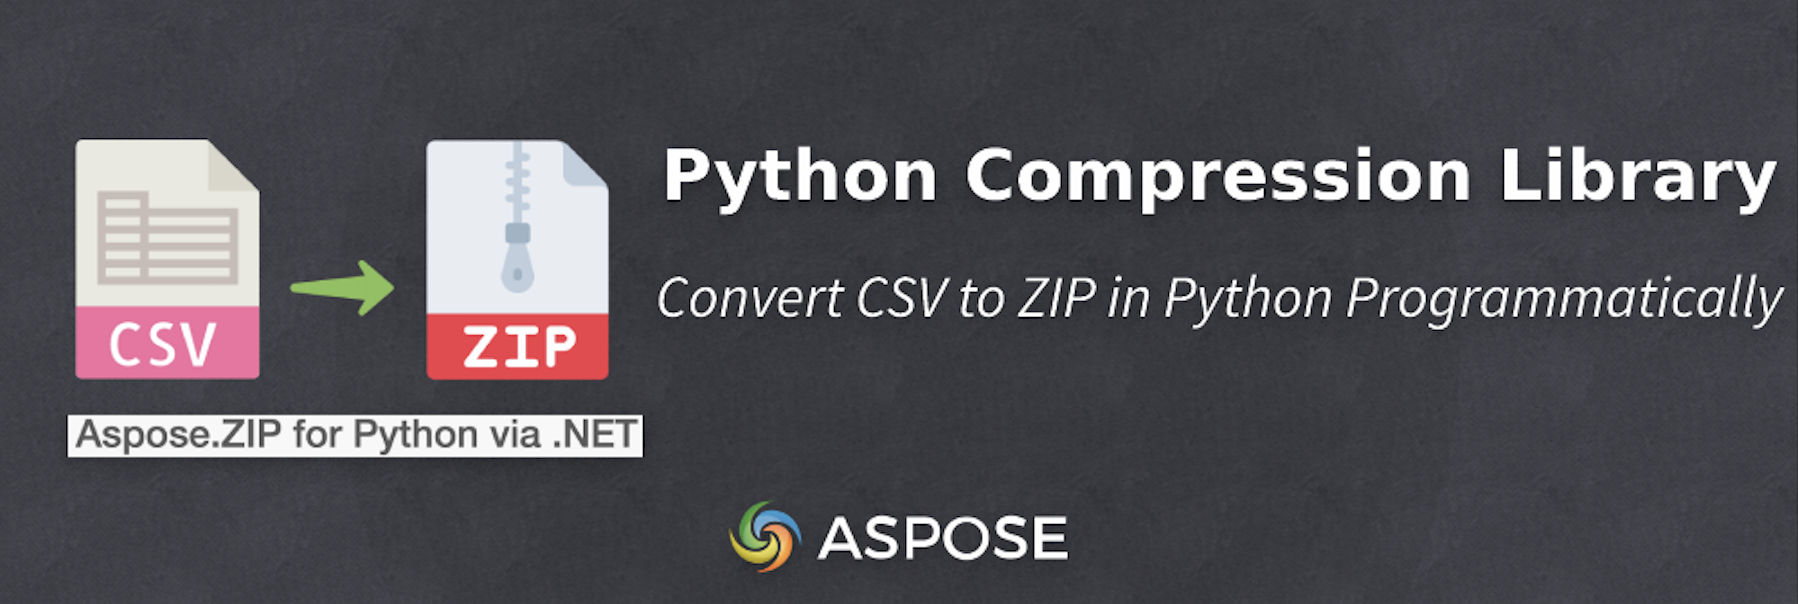 ضغط ملف CSV في Python - من CSV إلى ZIP